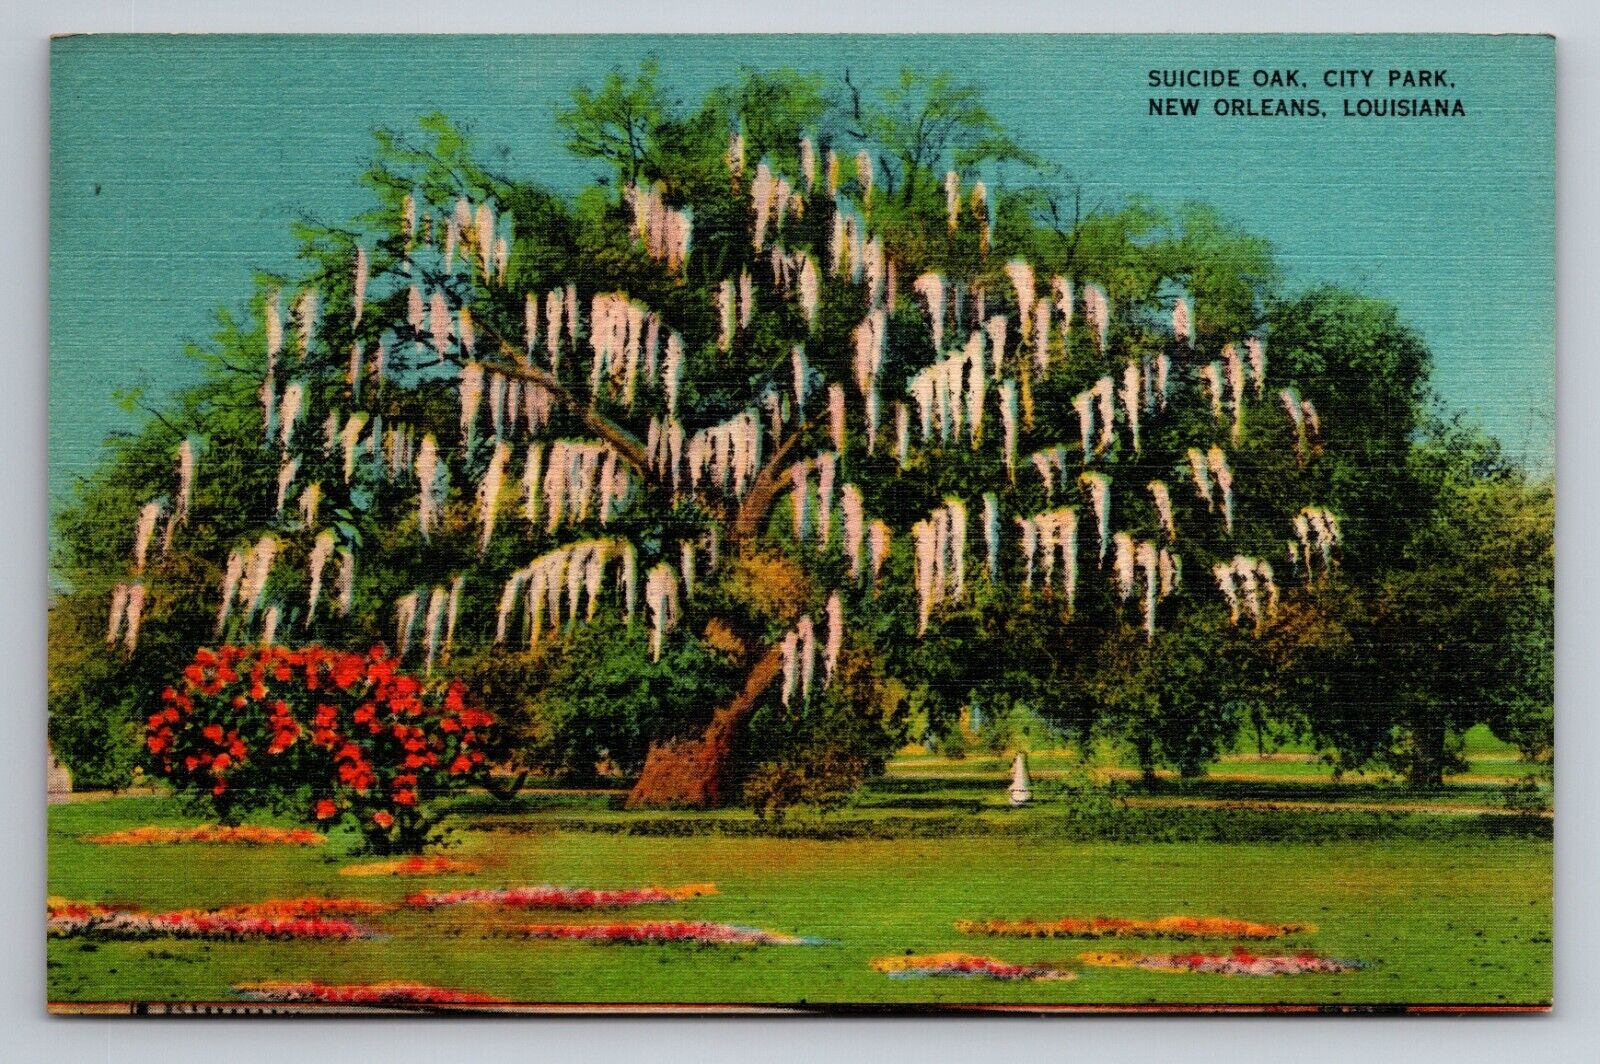 Suicide Oak City Park New Orleans Louisiana Vintage Unposted Linen Postcard